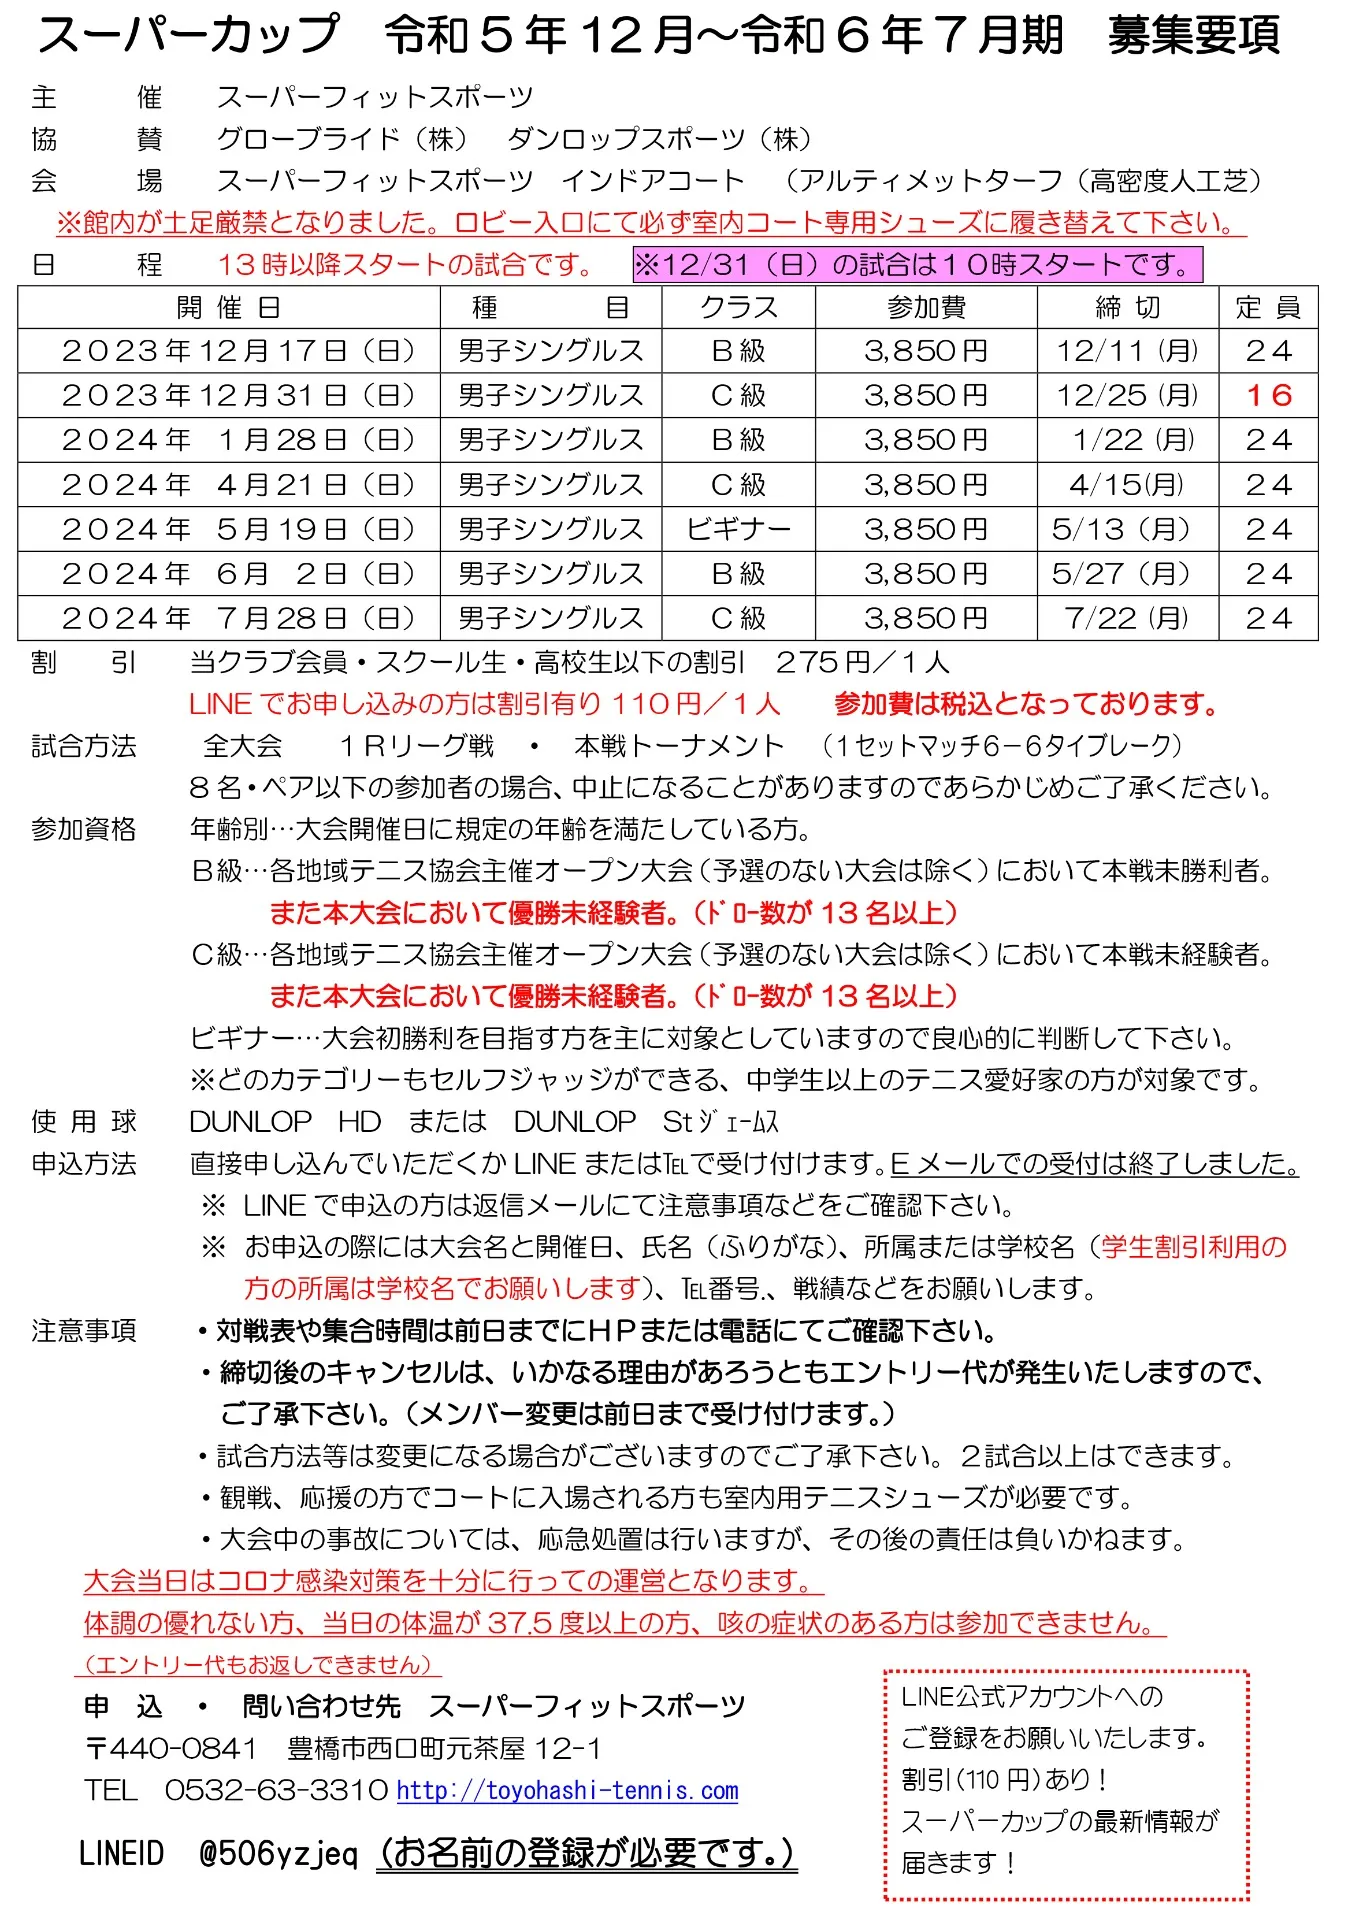 2022.10月～ビギナー・C級・B級シングルス